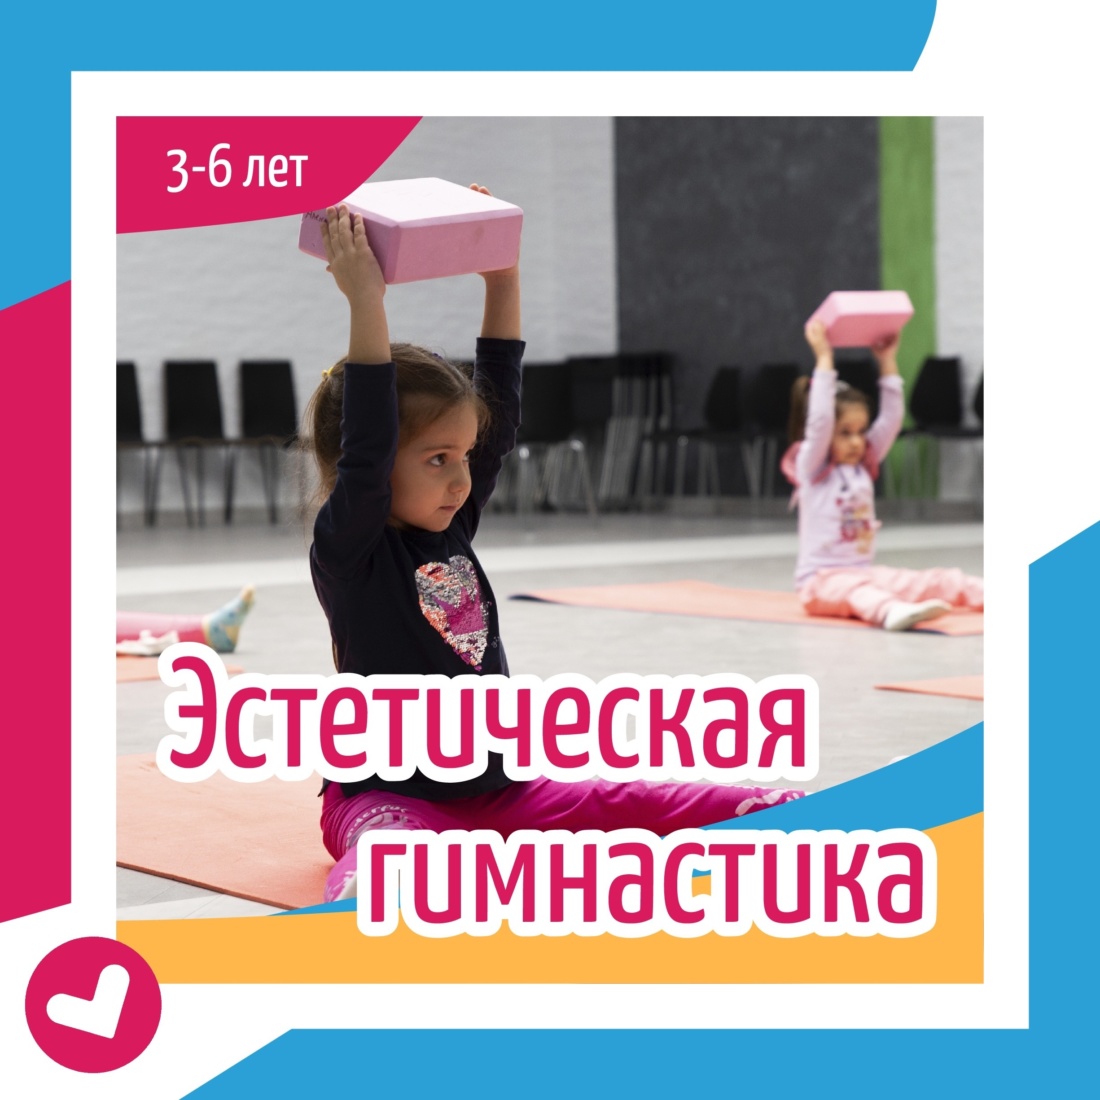 В Иванове открыта запись детей на программу "Эстетическая гимнастика"